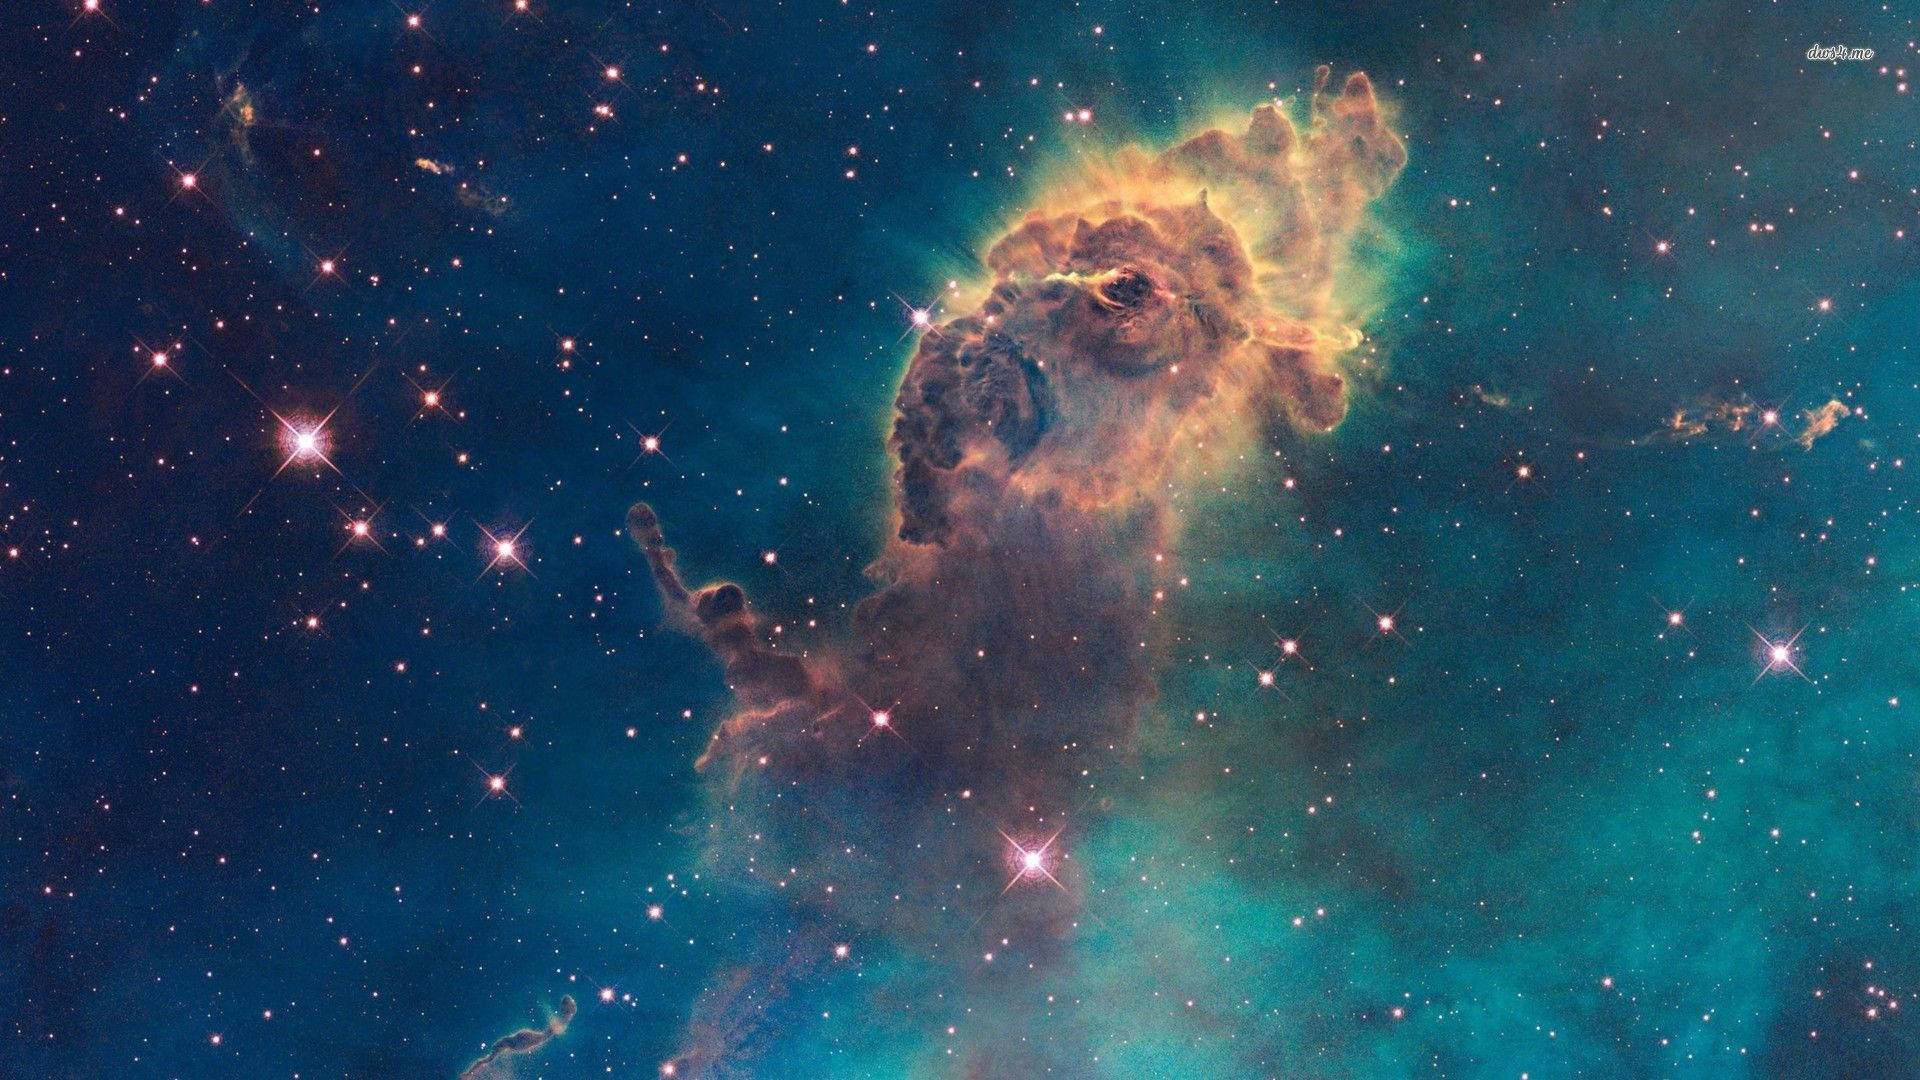 Nebula Wallpaper, Gallery Of 47 Nebula Background, Wallpaper. Gg.yan Background